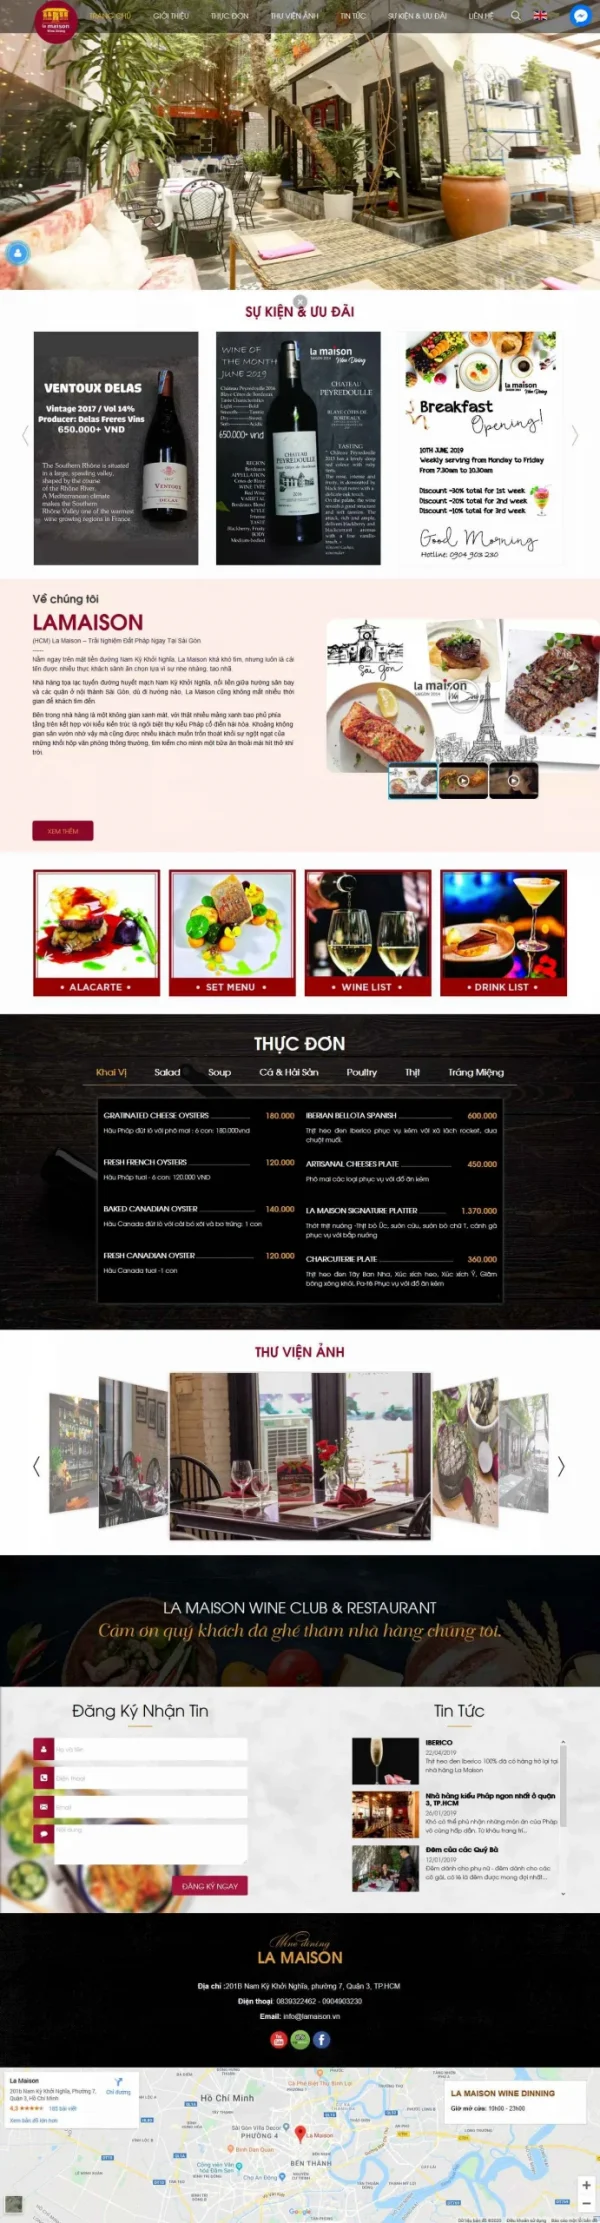 Mẫu giao diện website nhà hàng La Maison